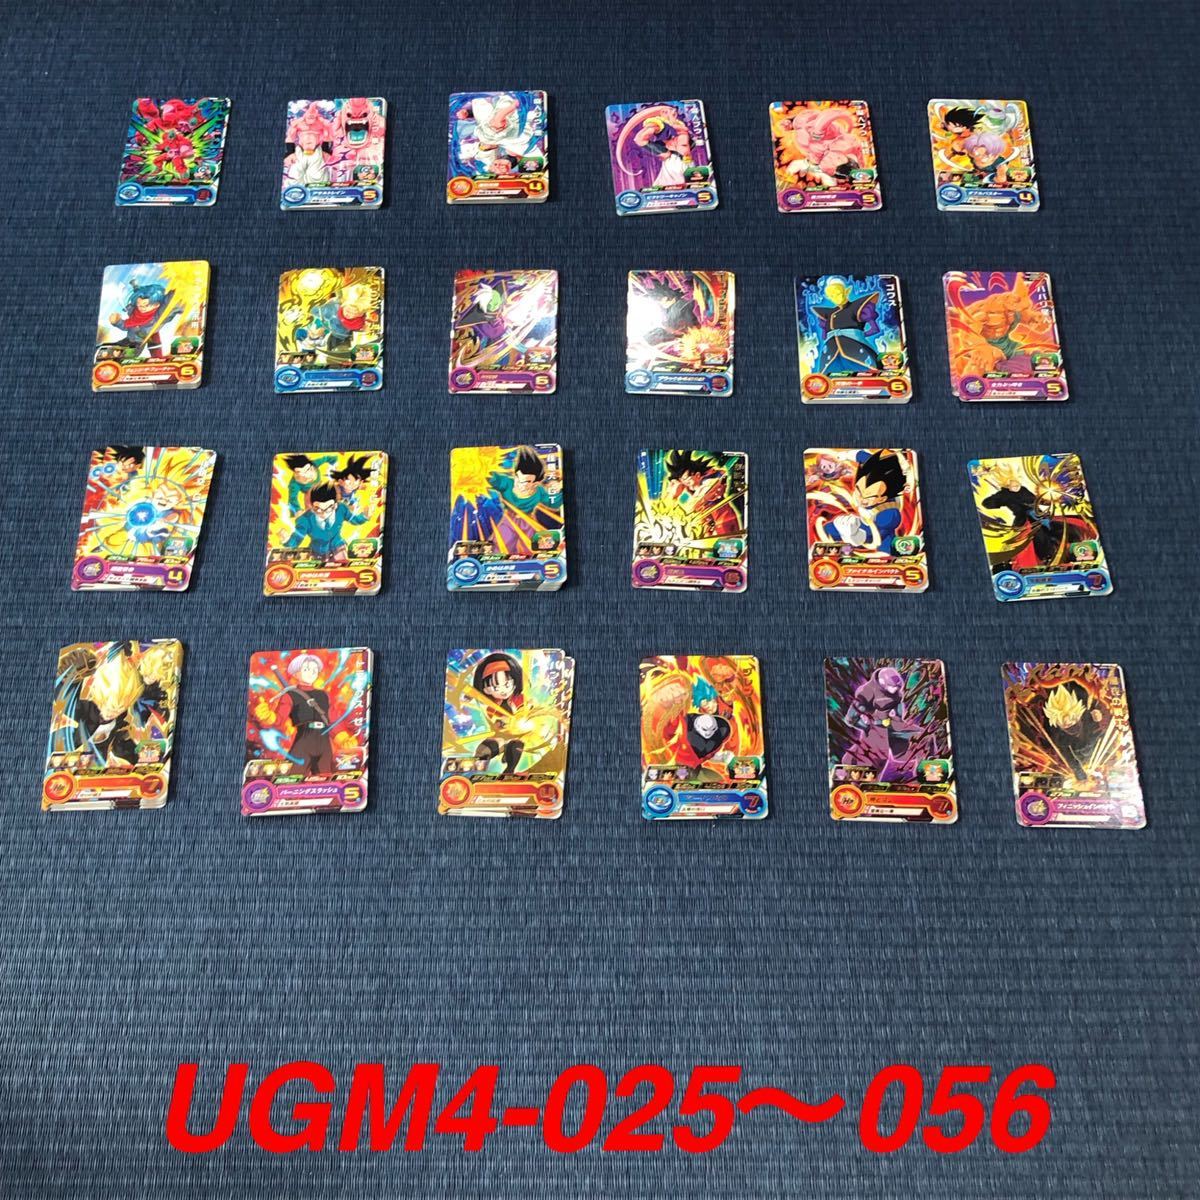 約7000枚】スーパードラゴンボールヒーローズ UGM1 UGM2 UGM3 UGM4